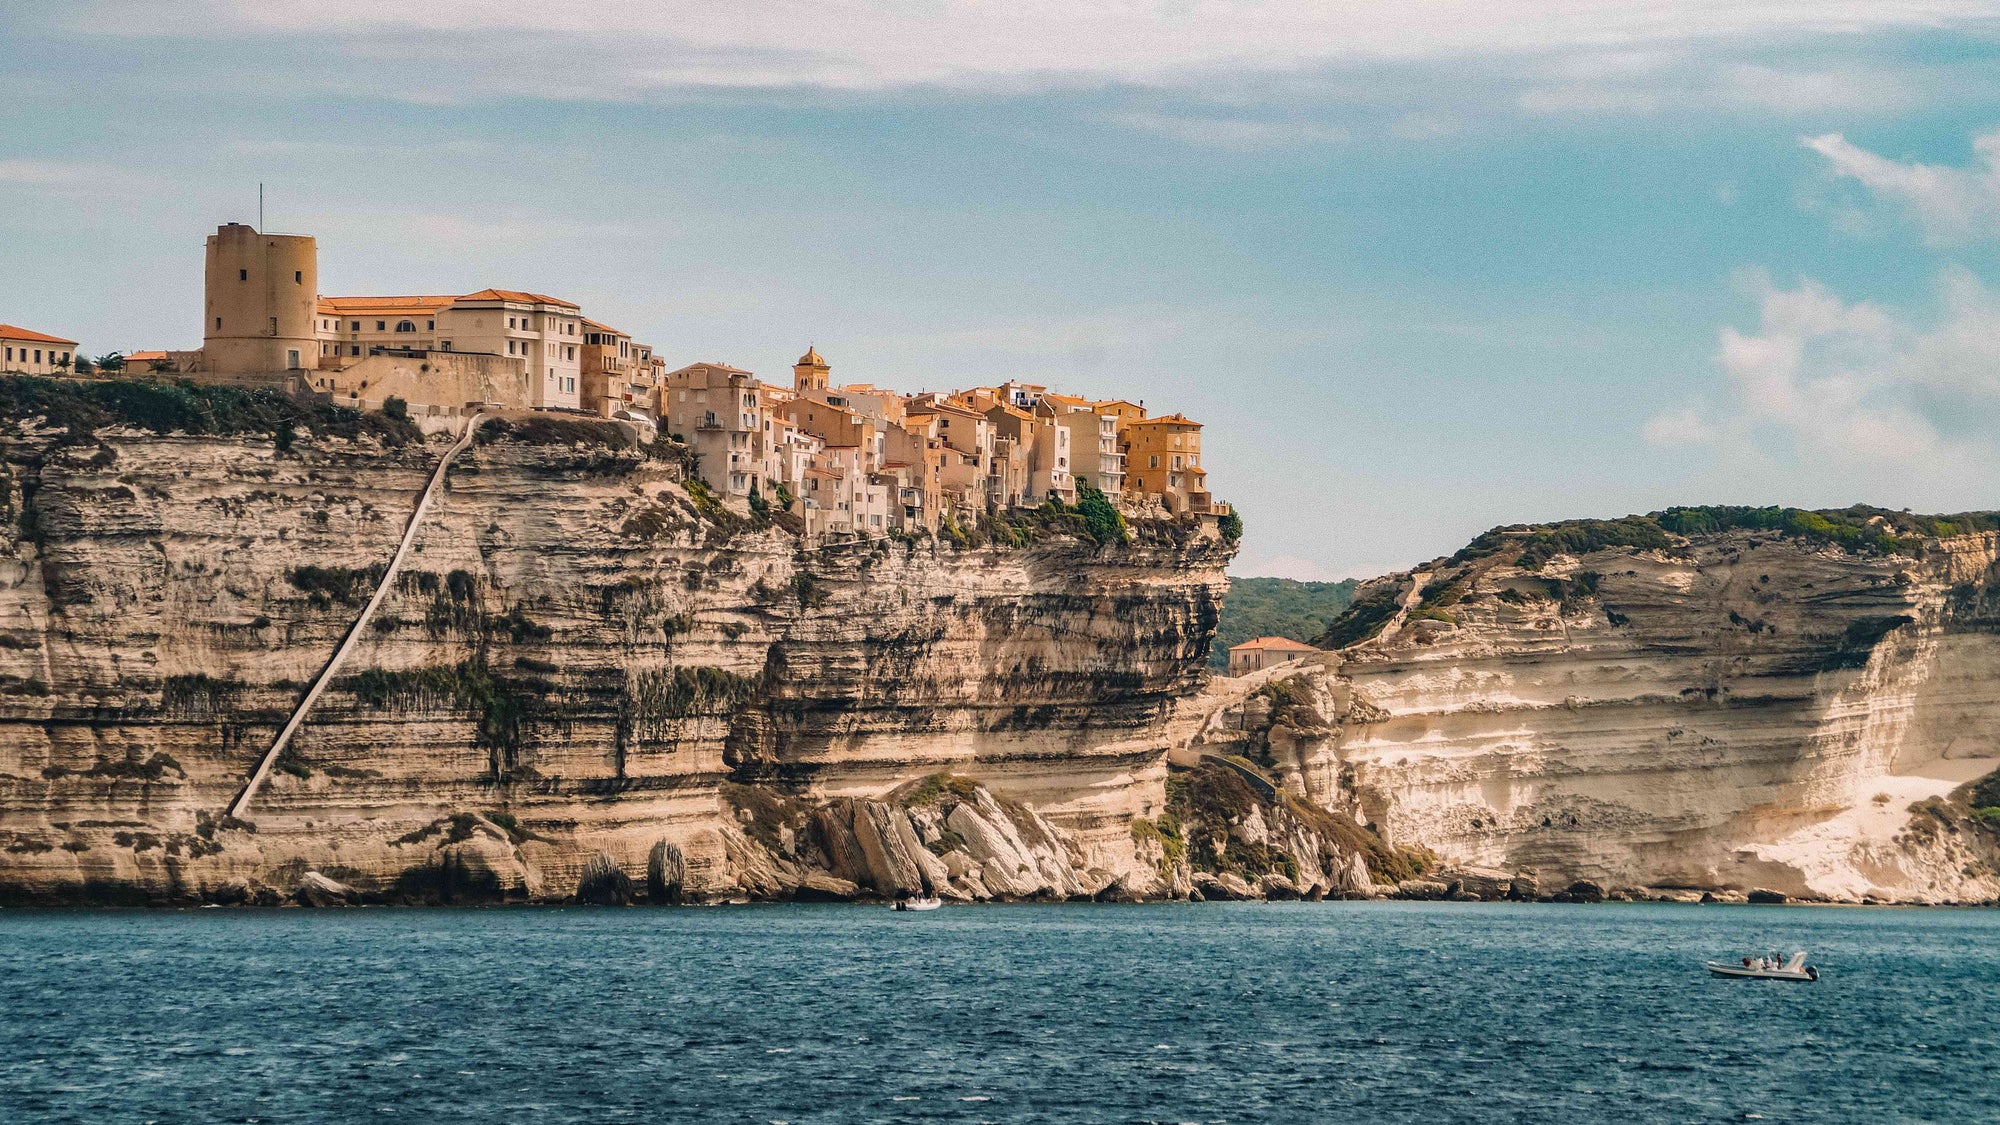 Rondreis Corsica in 3 weken | Onze reisroute